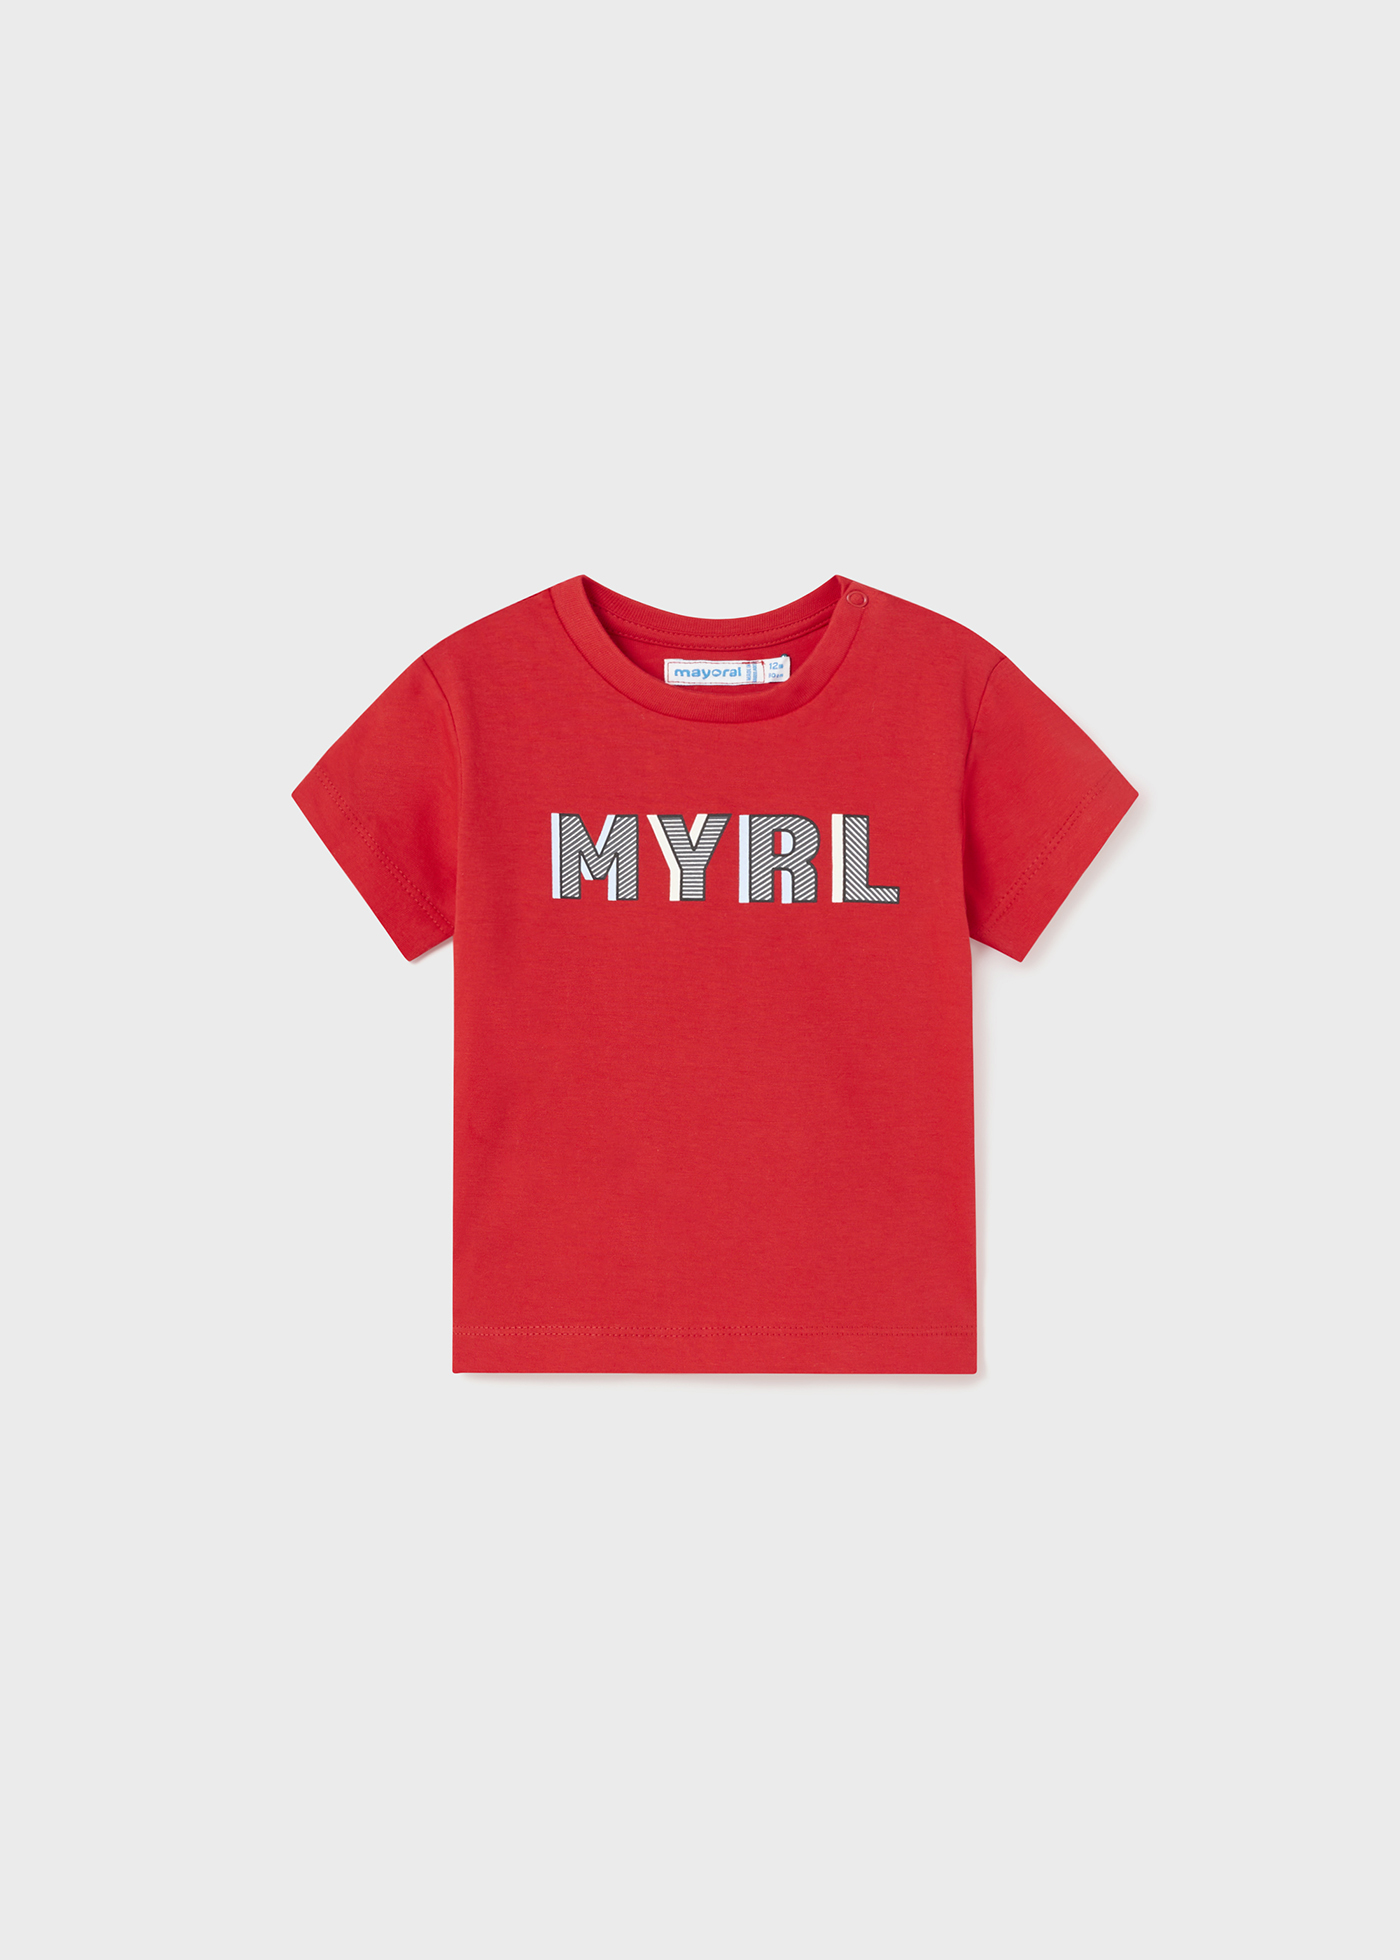 Camiseta básica corta bebé niño Rojo